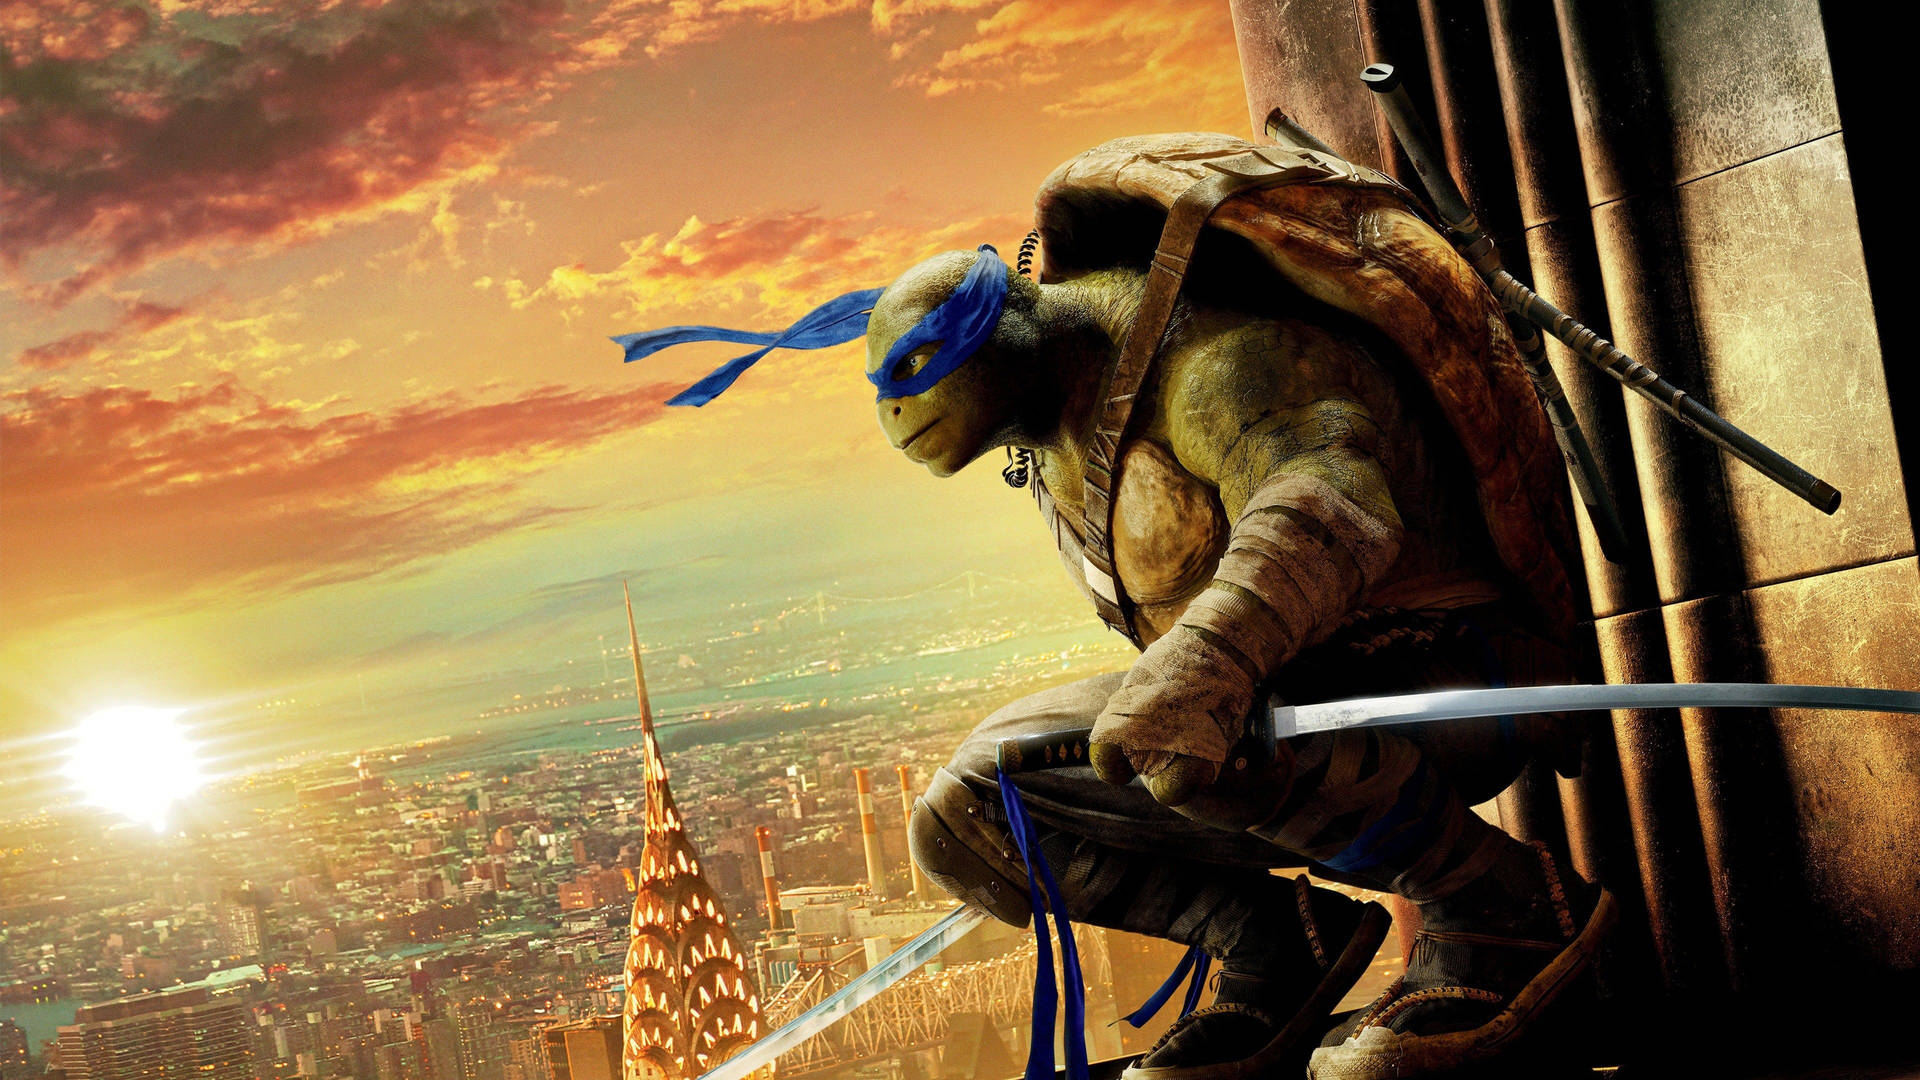 Ninja Turtle Leonardo Hollywood Movie Wallpaper